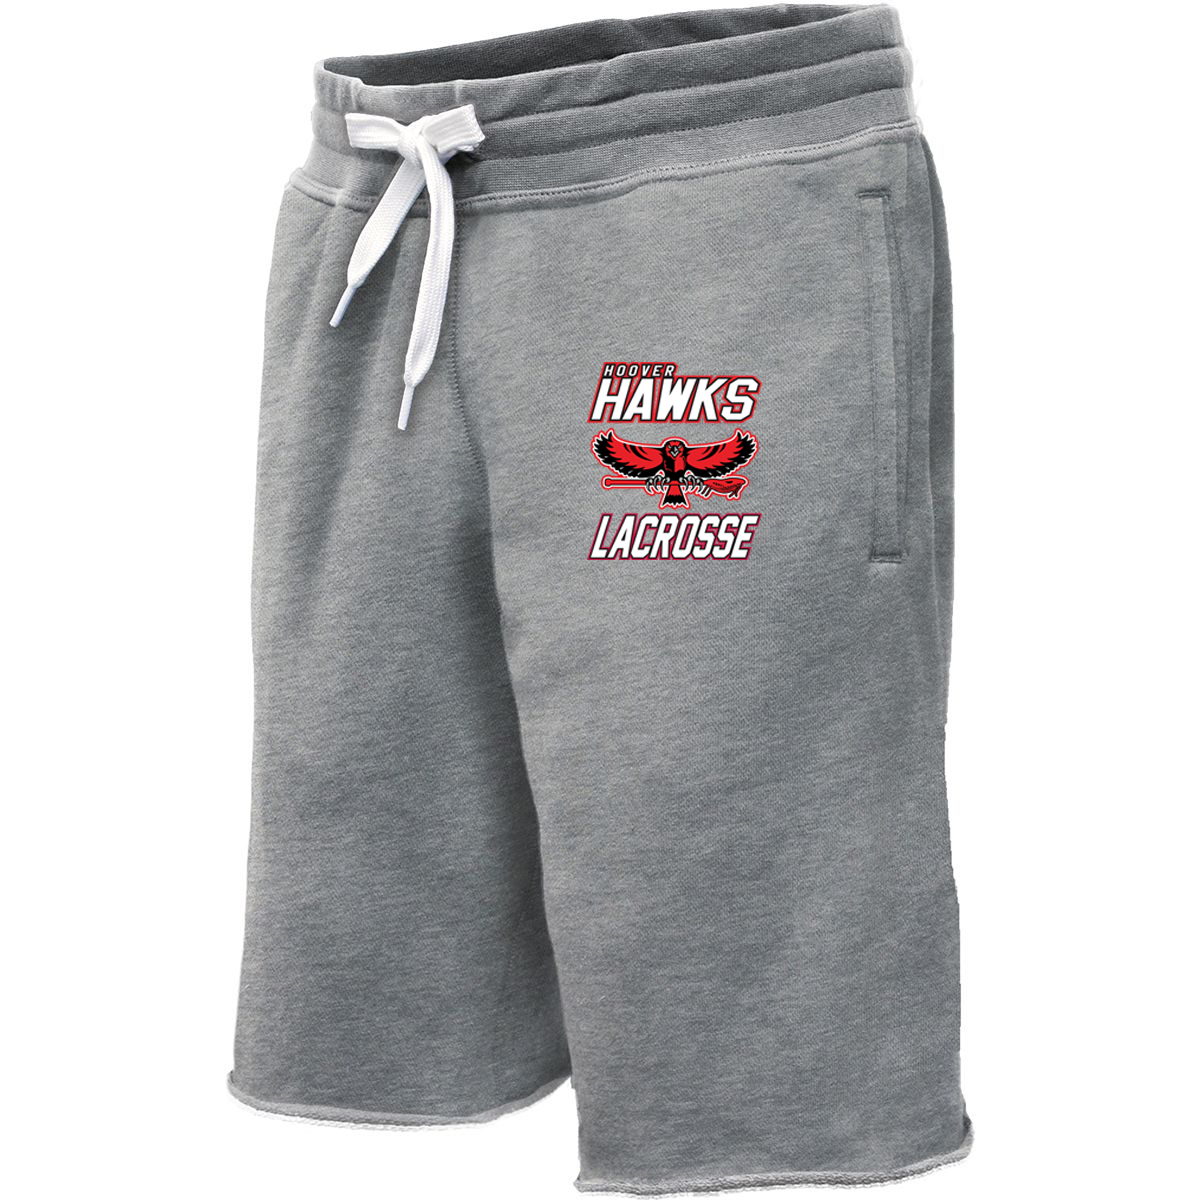 Hawks Lacrosse Sweatshort